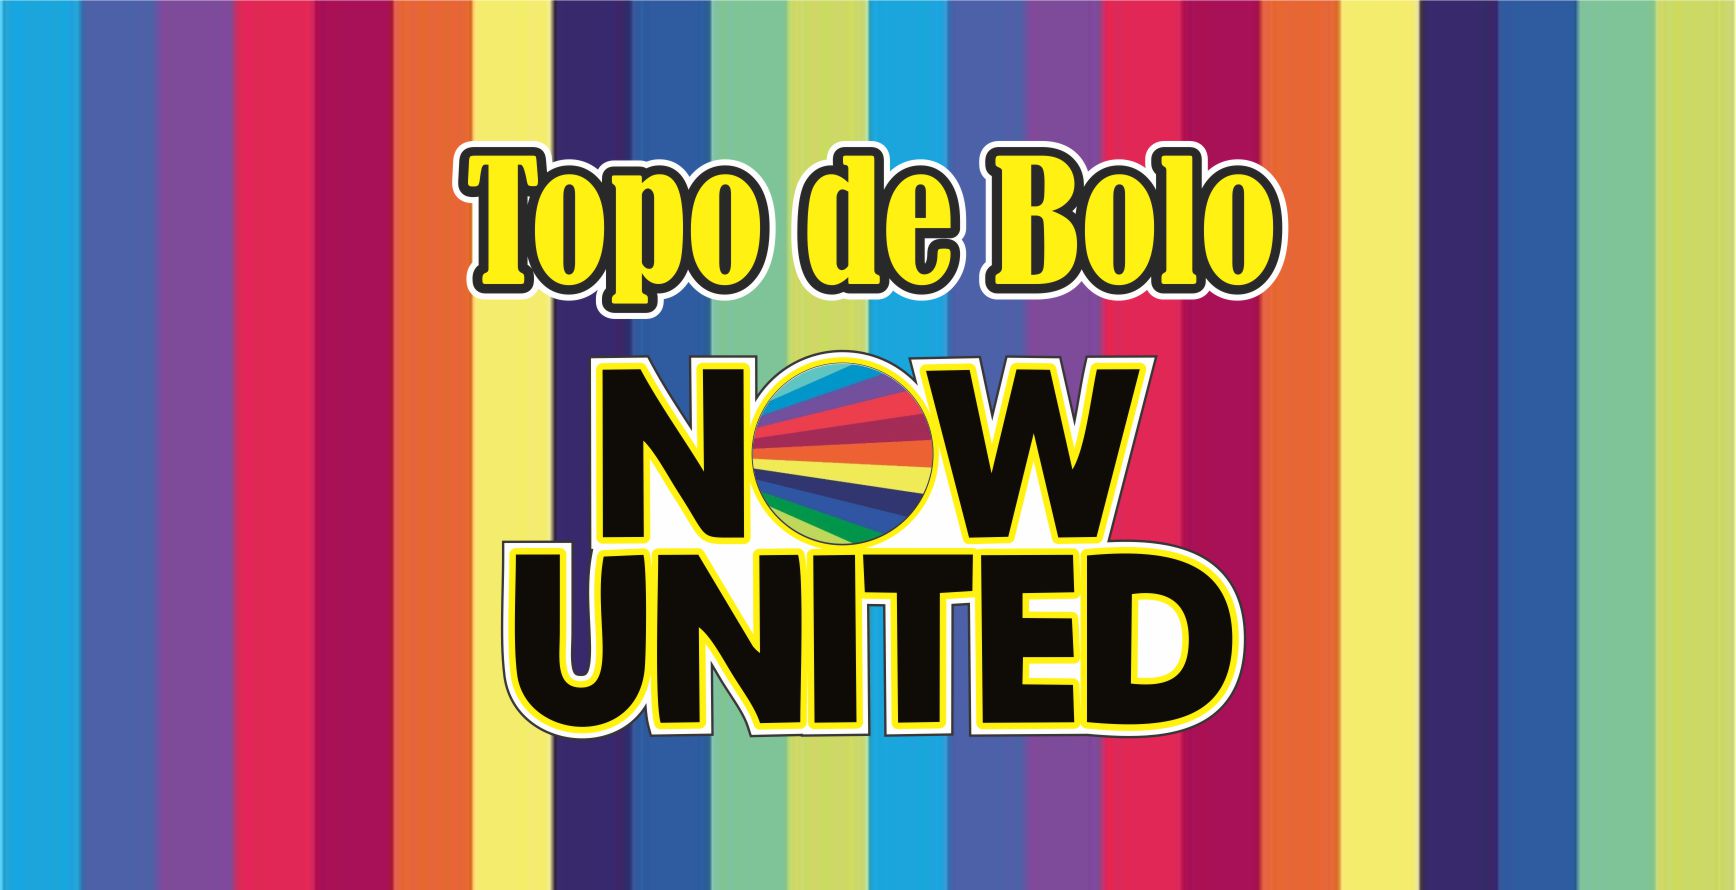 CAPA NOW UNITED - Topo de bolo Now United Pronto Para imprimir gratuito